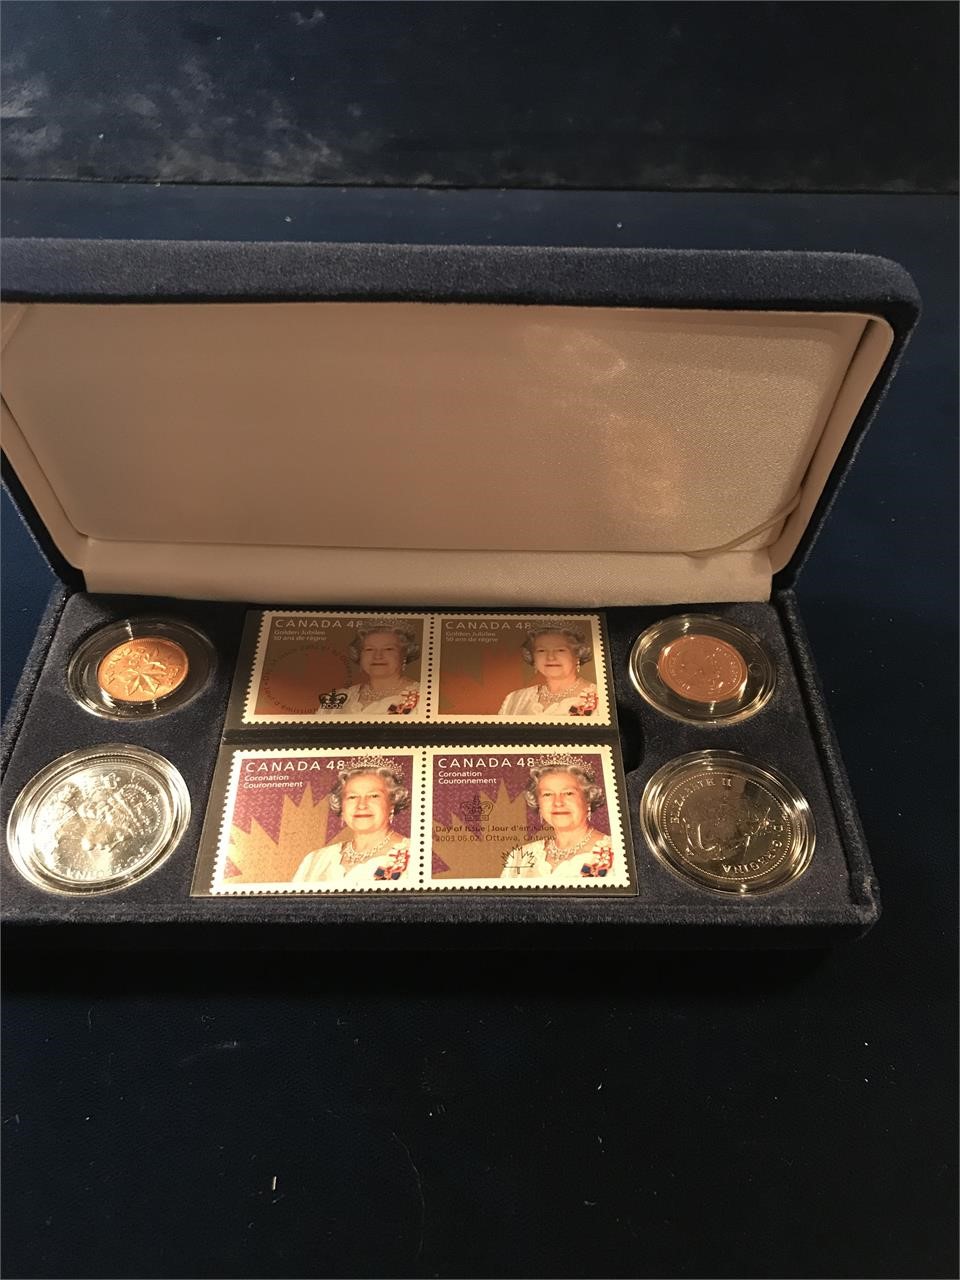 2003 Queen Elizabeth II Coronation Stamp & Coin Set 